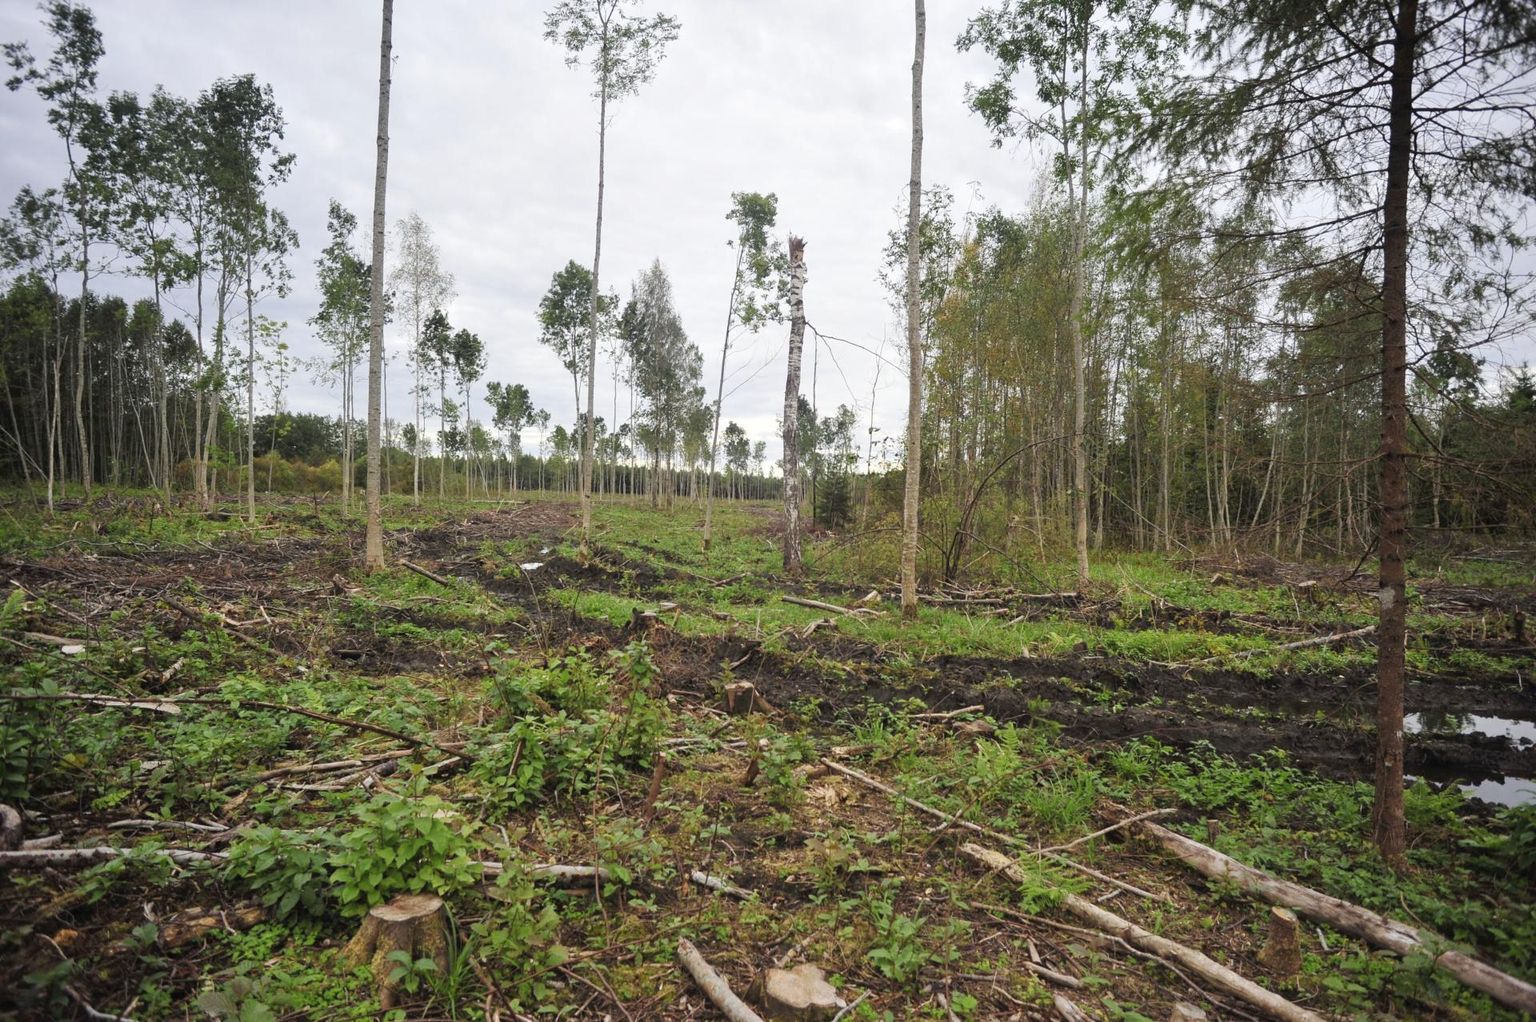 Autori arvates on metsaraie keskkonnale kahjulikuks pidamine ja sellele rahaahnuse sildi kleepimine rumal.